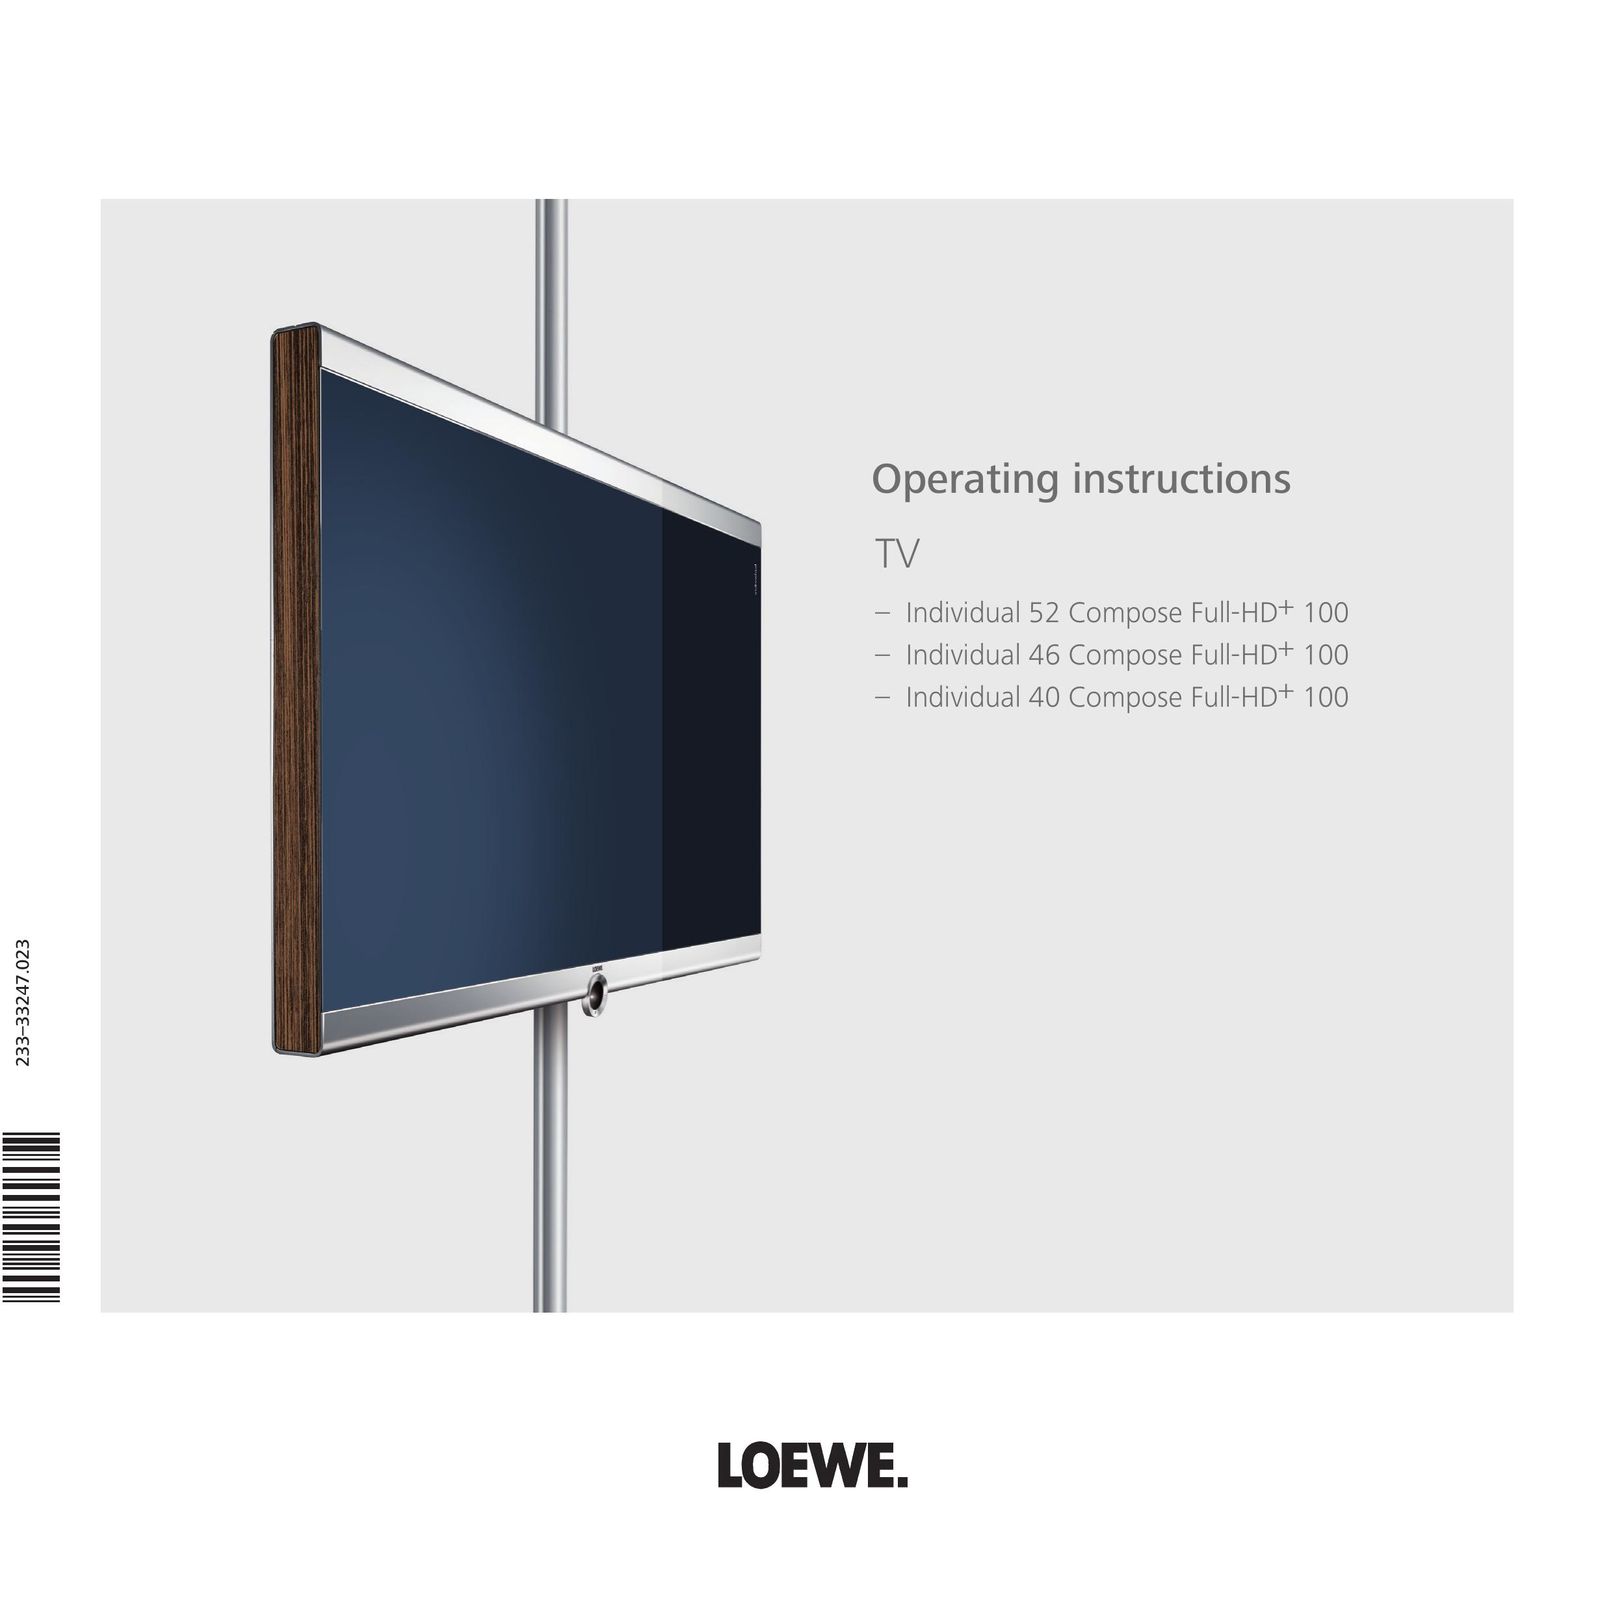 Loewe 52 Flat Panel Television User Manual